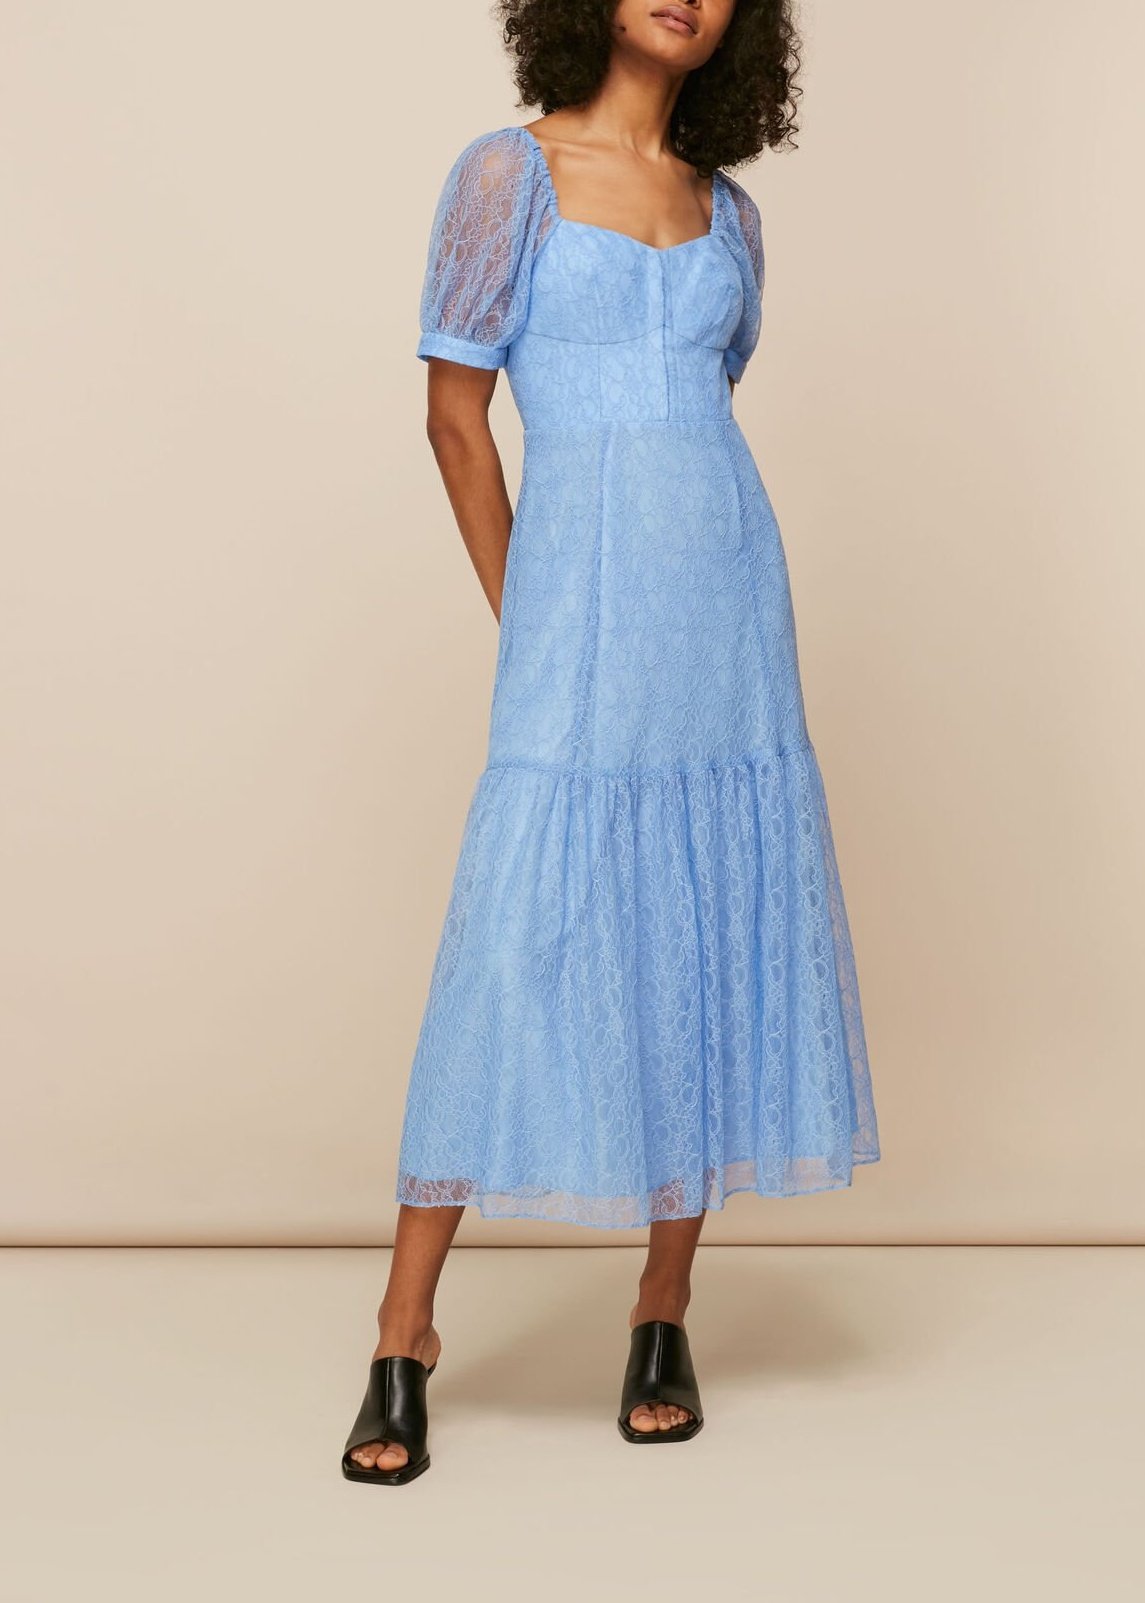 Lace Corset Dress 32789 Blue